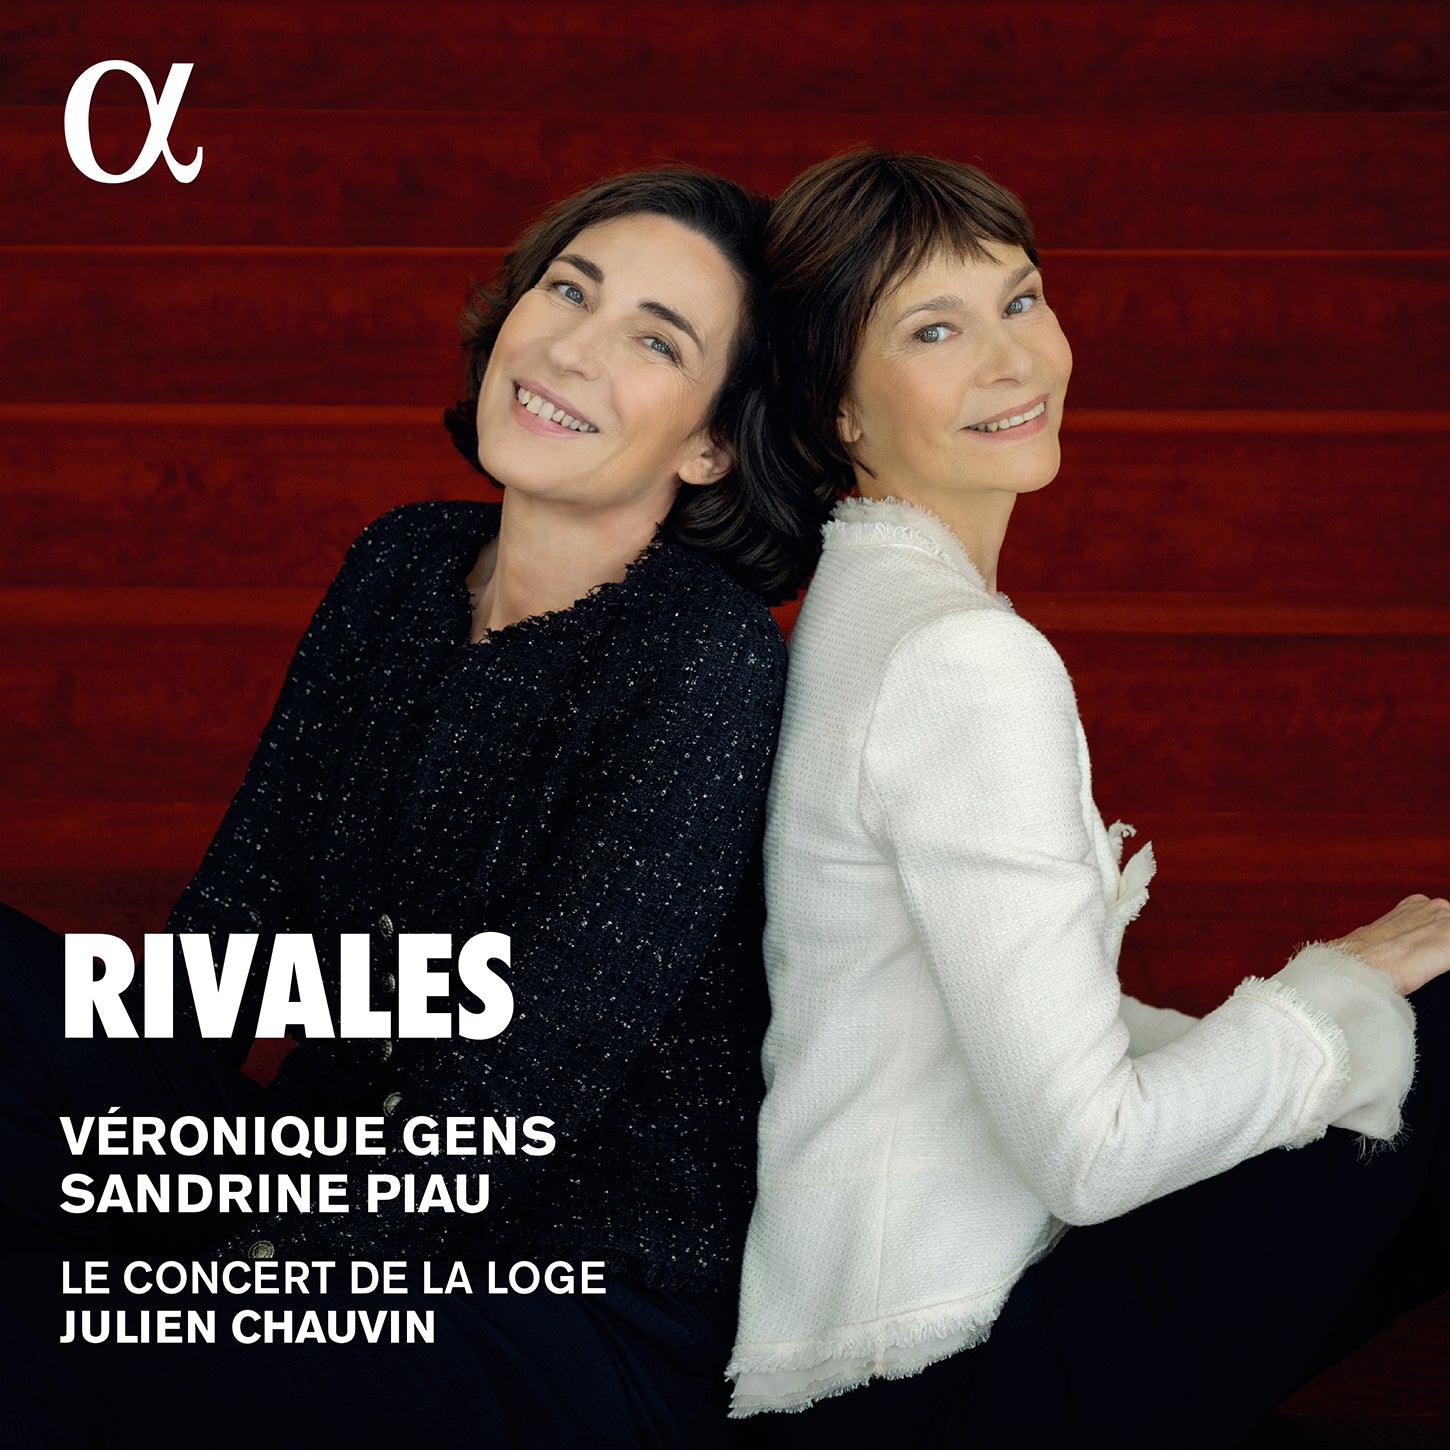 Rivales / Gens, Piau, Chauvin, La Concert de la Loge